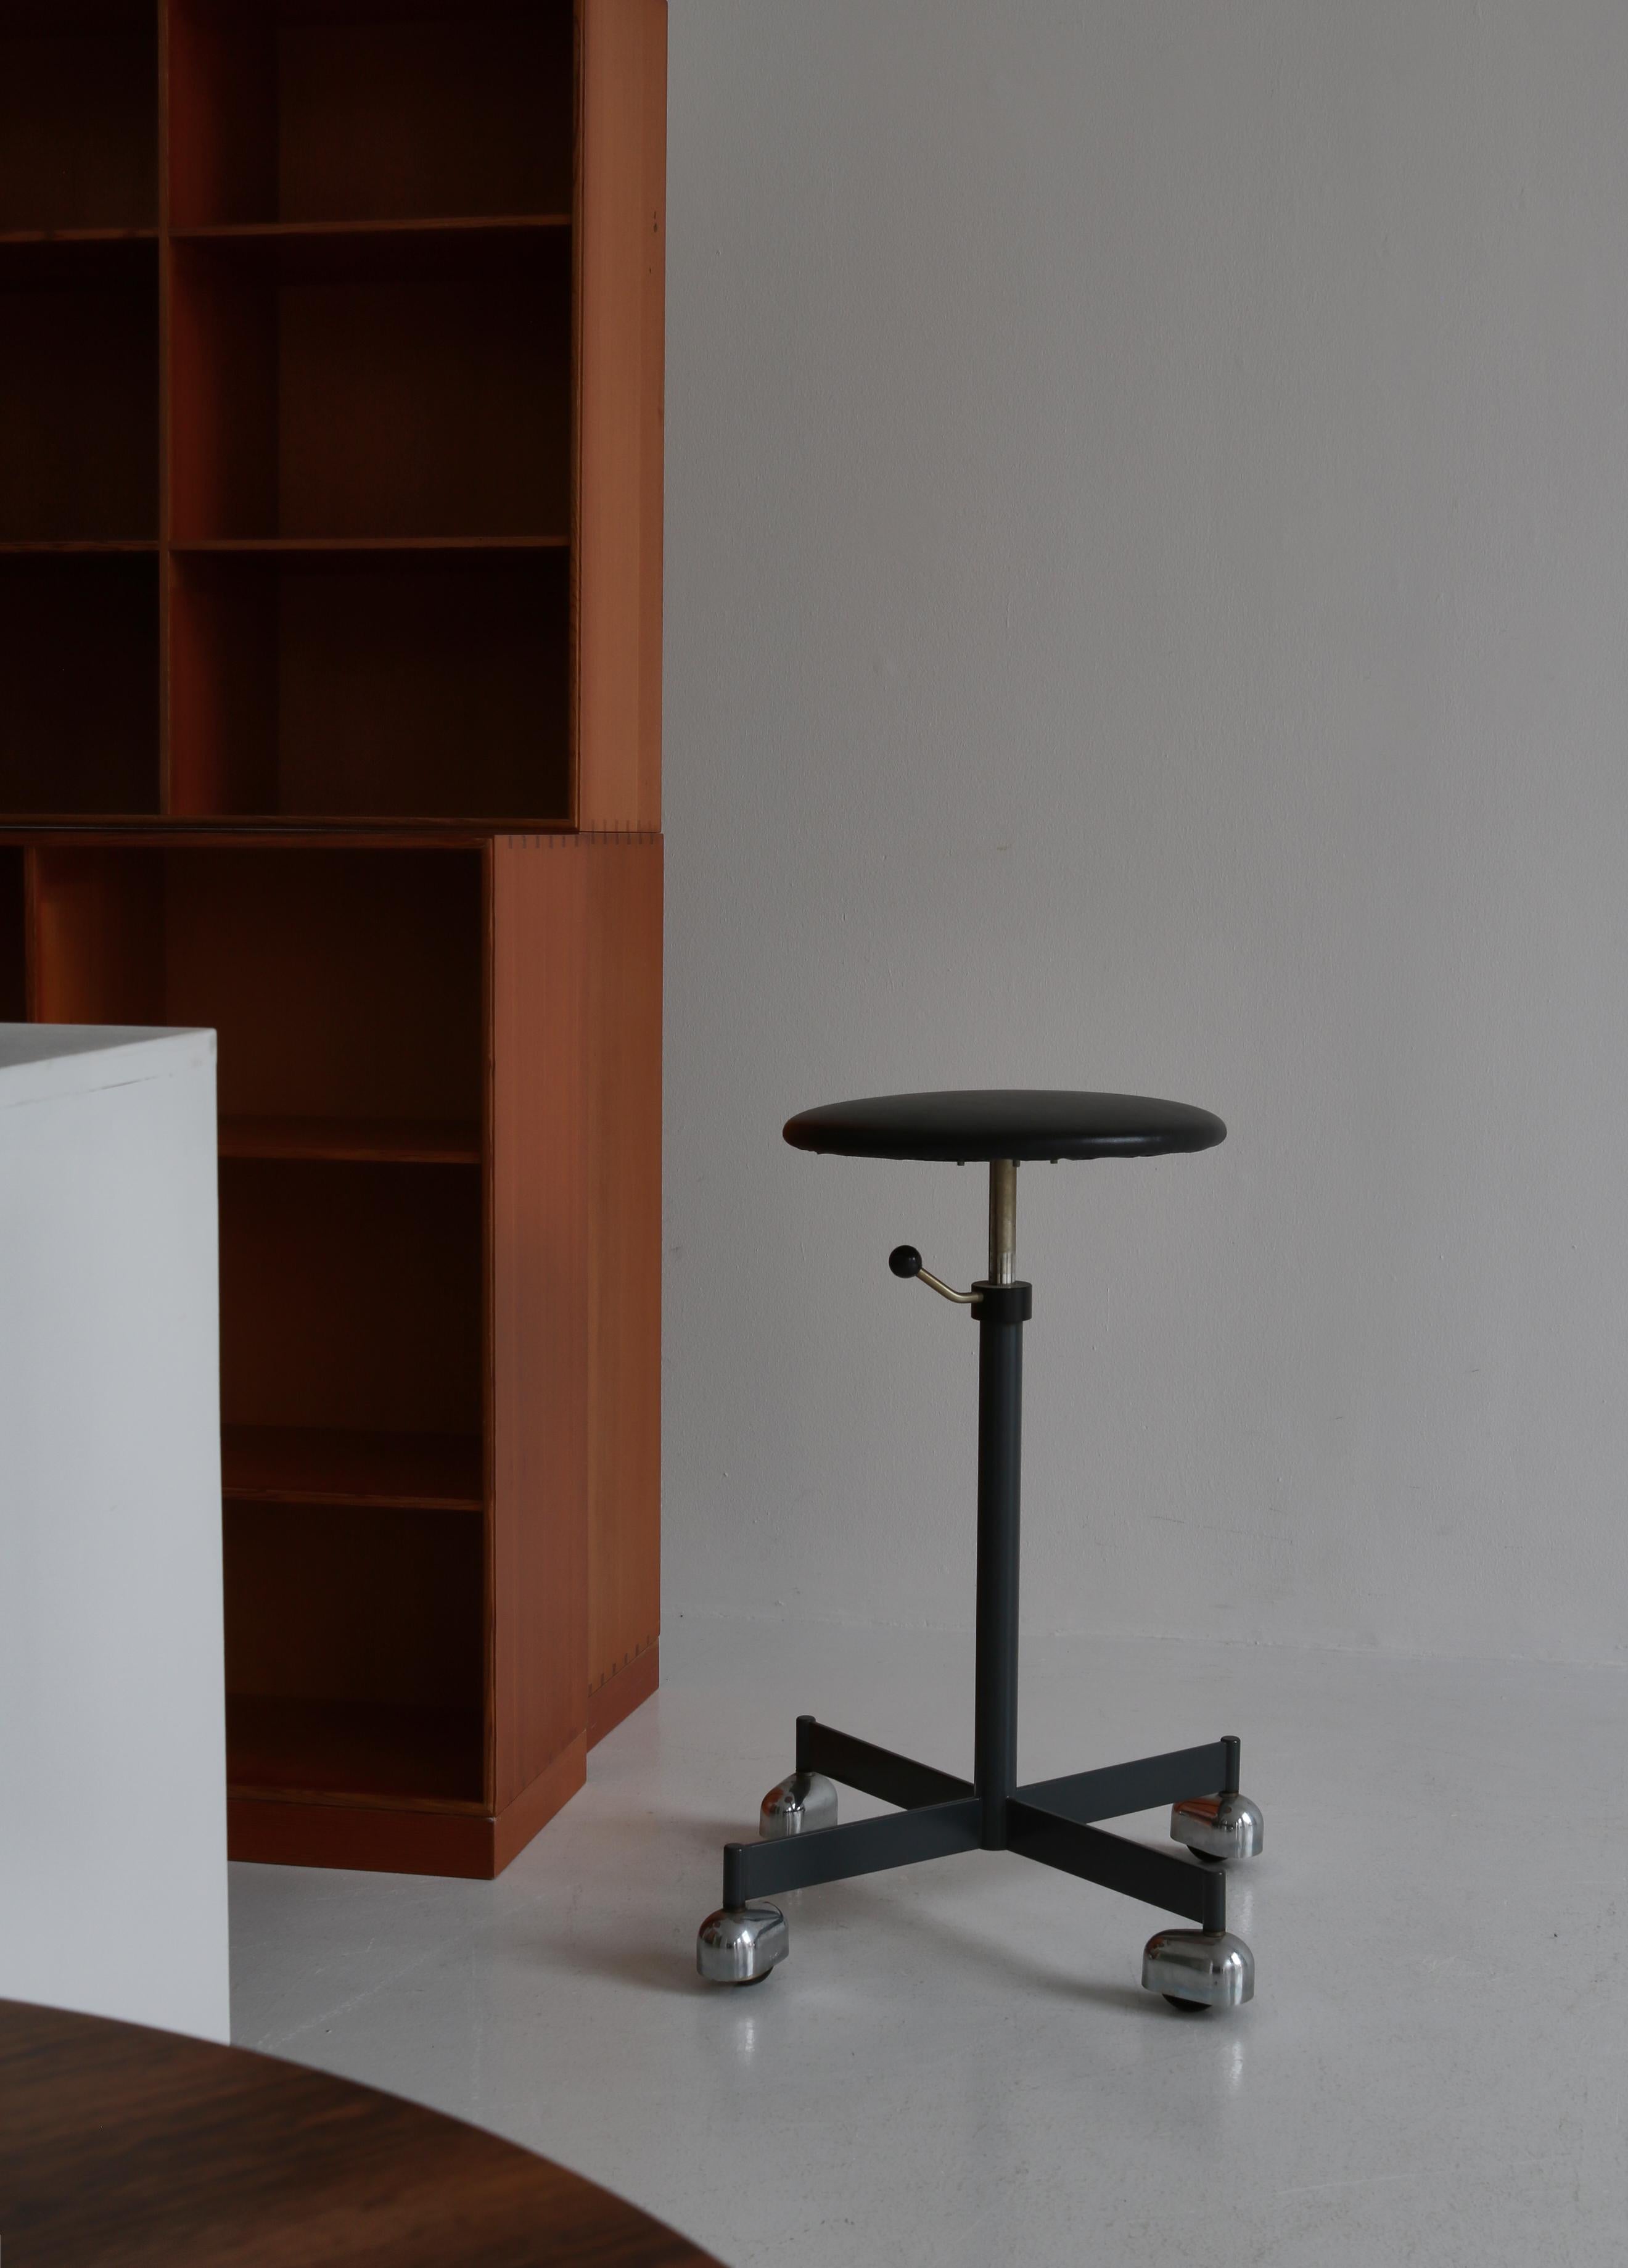 Tabouret de bureau vintage pivotant en acier et cuir fabriqué par Kevi, Danemark dans les années 1960. La chaise peut être réglée en hauteur. Ce modèle a été produit en nombre limité et est très rare.

Provenance :
Acheté à la succession de